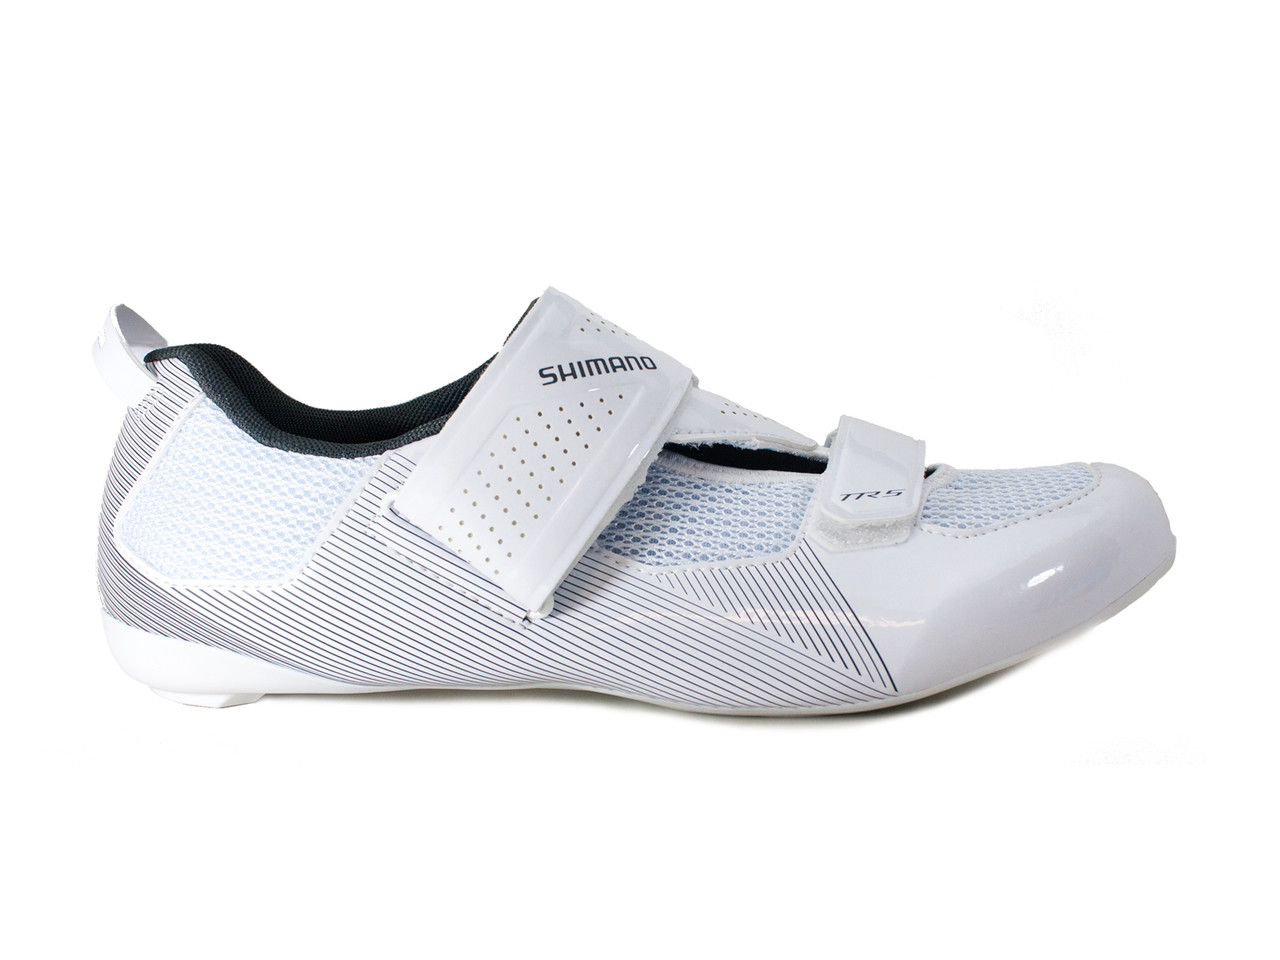 shimano triathlon shoes